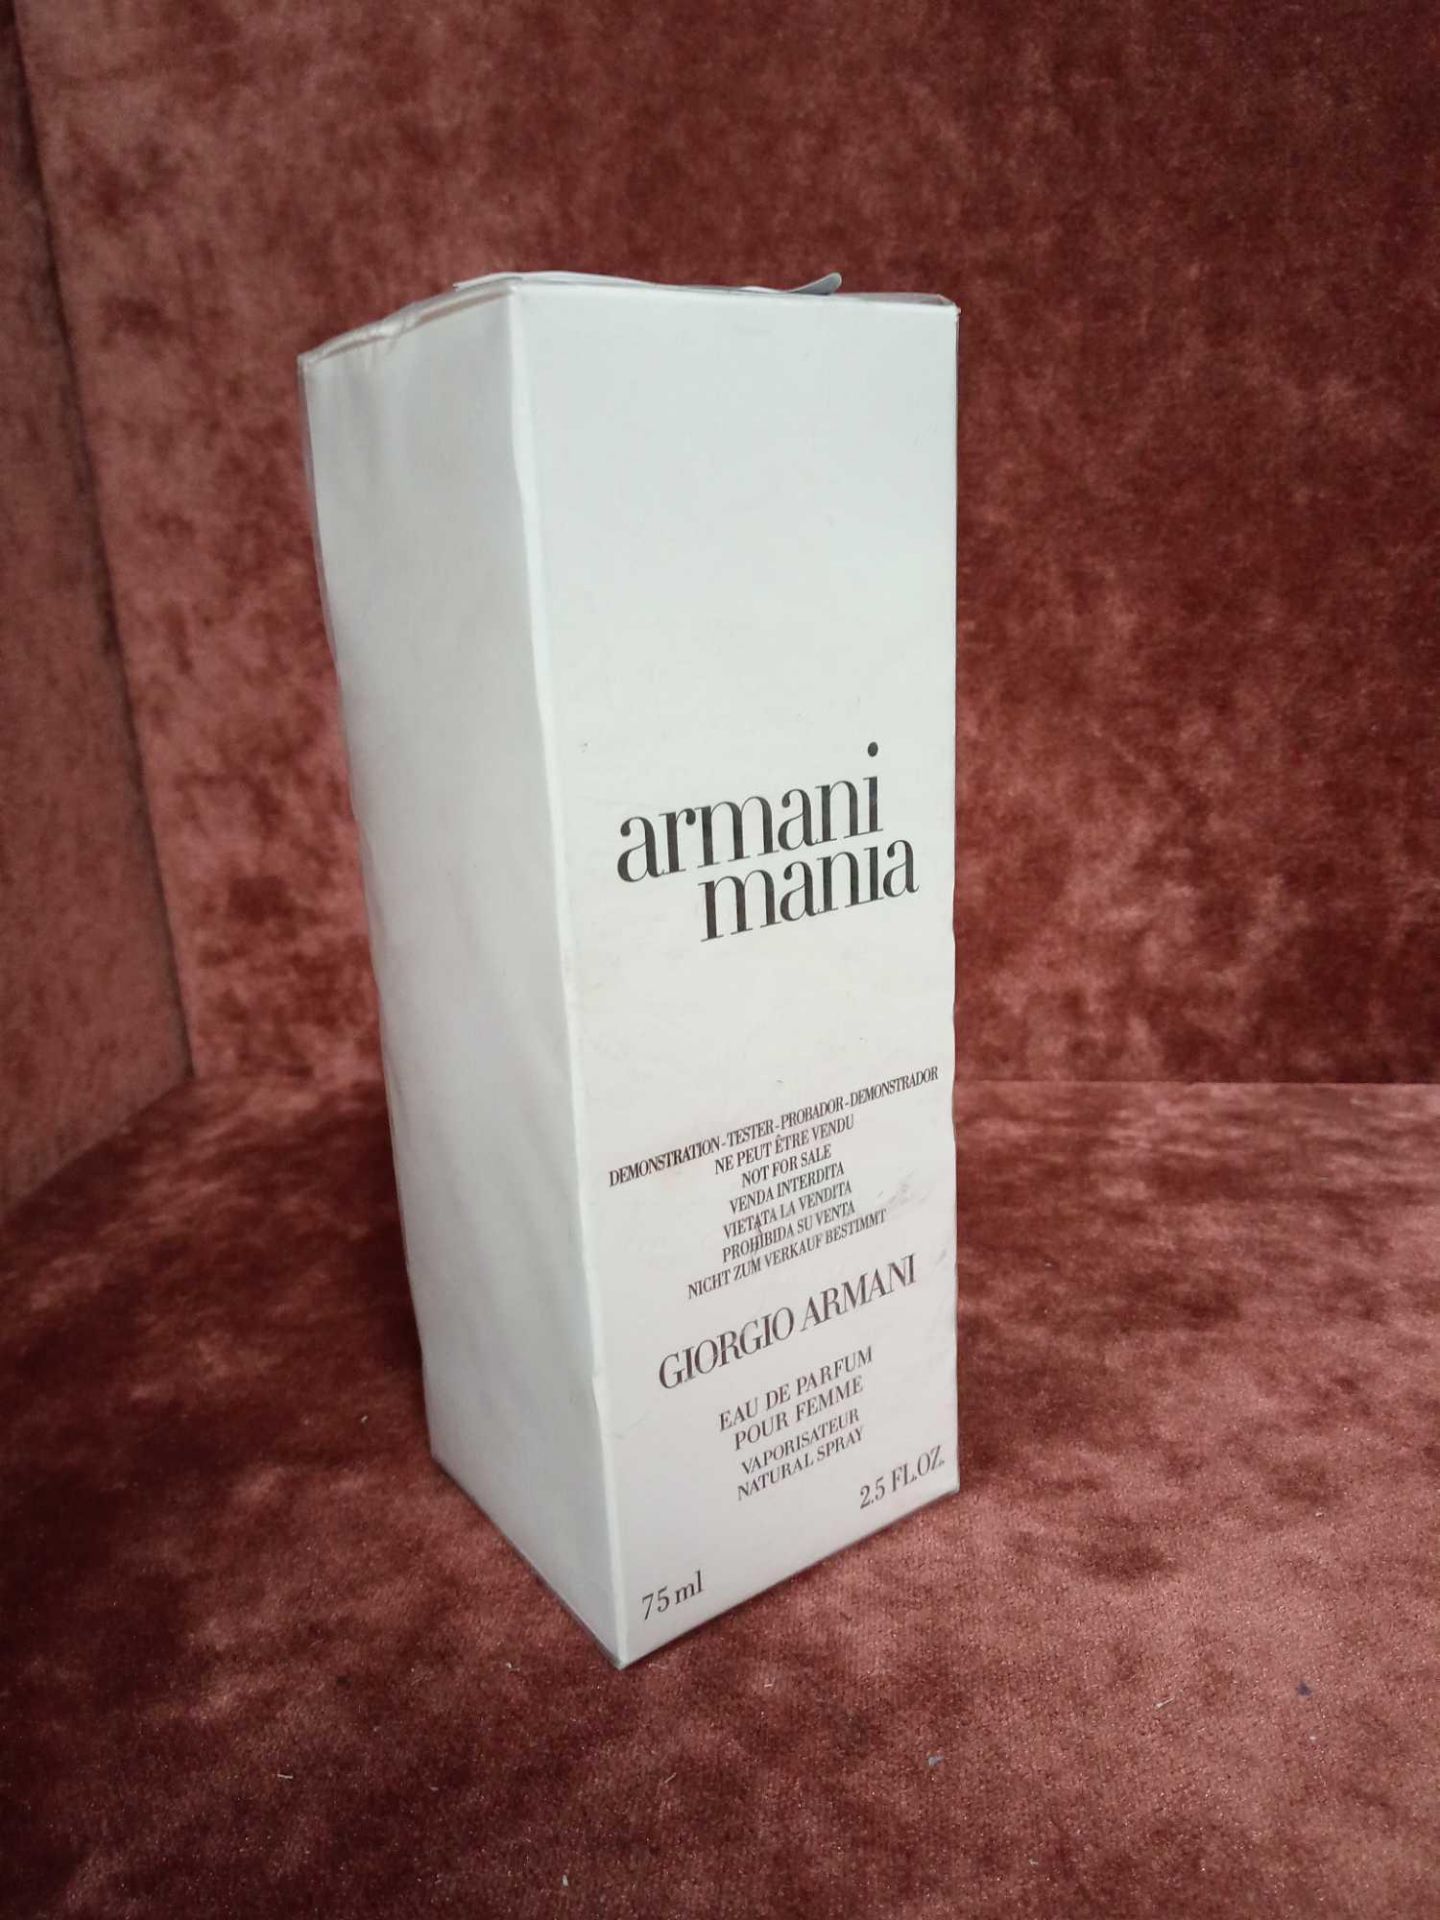 RRP £65 Brand New Boxed And Sealed Tester Of Giorgio Armani Armani Mania Perfume Pour Femme